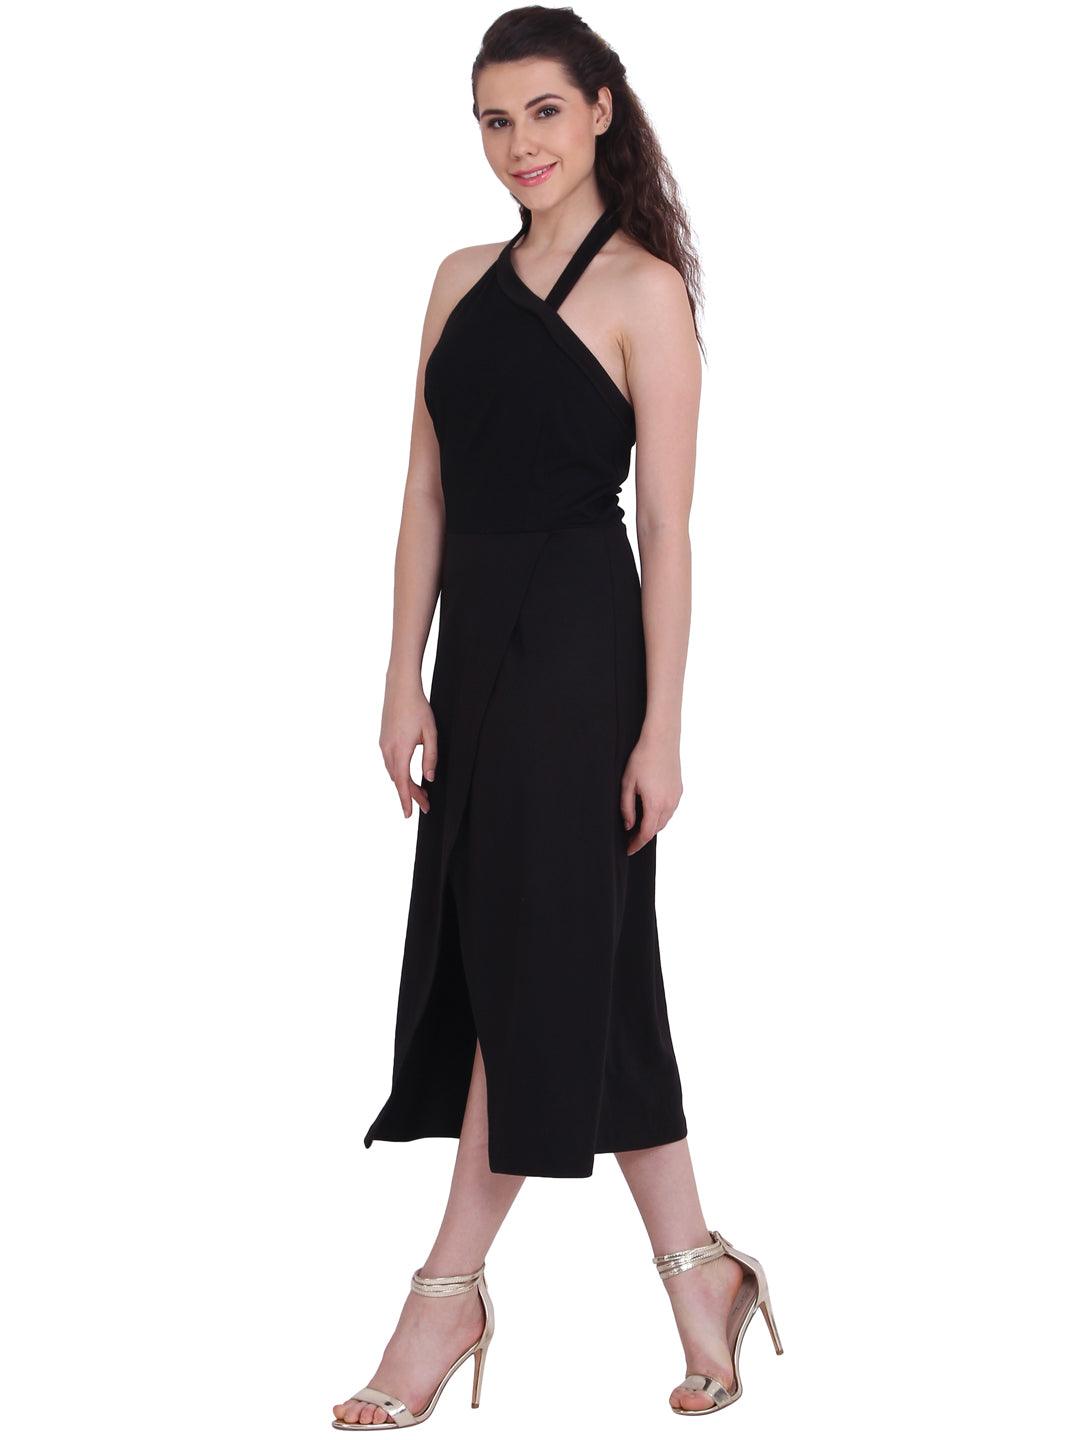 Black Sleeveless Dress - Znxclothing